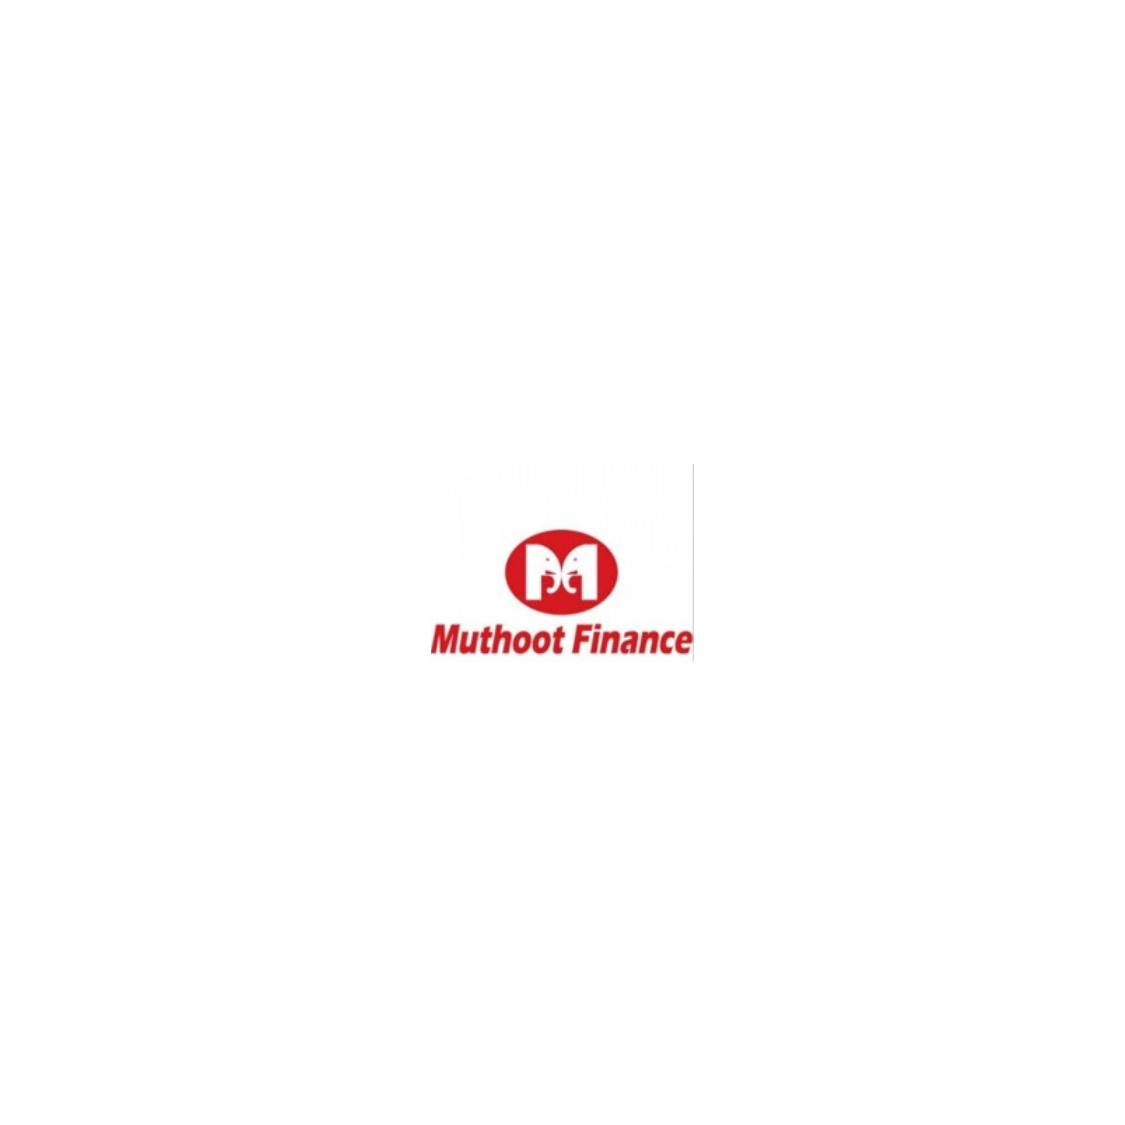 muthoot finance logo